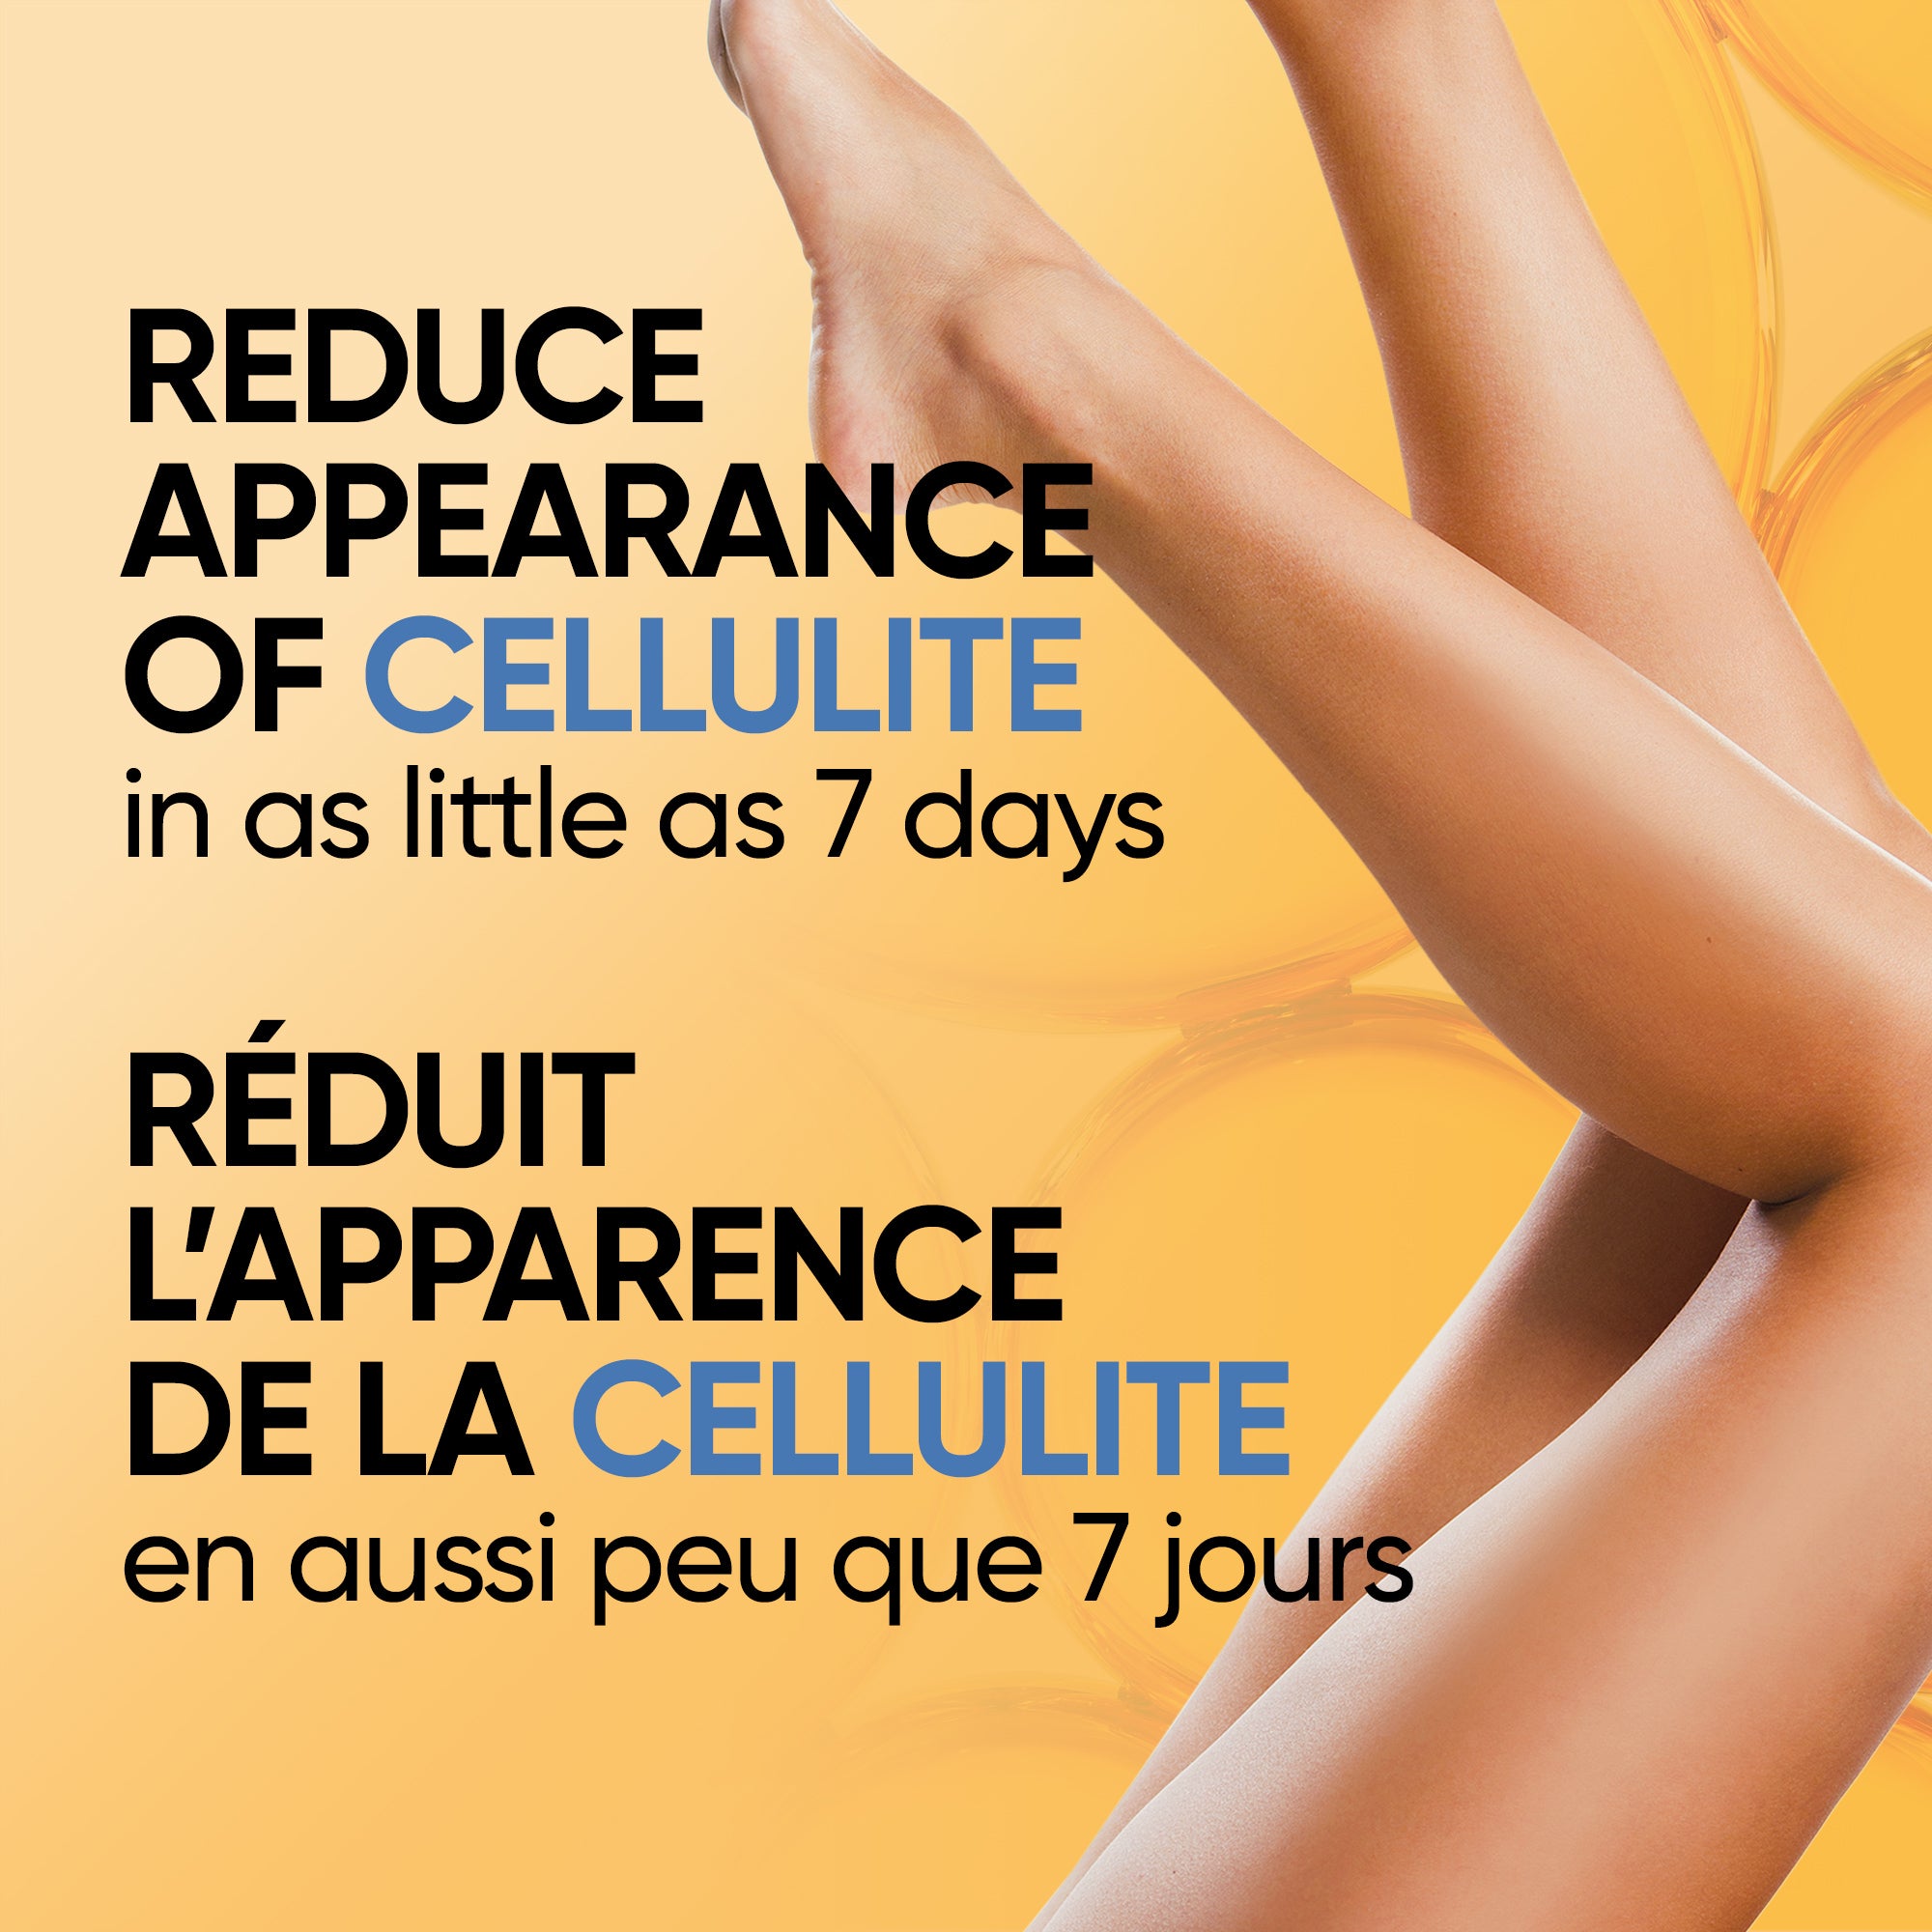 English: Reduce appearance of cellulite in as little as 7 days. Français: Atténue l’apparence de la cellulite en aussi peu que 7 jours.